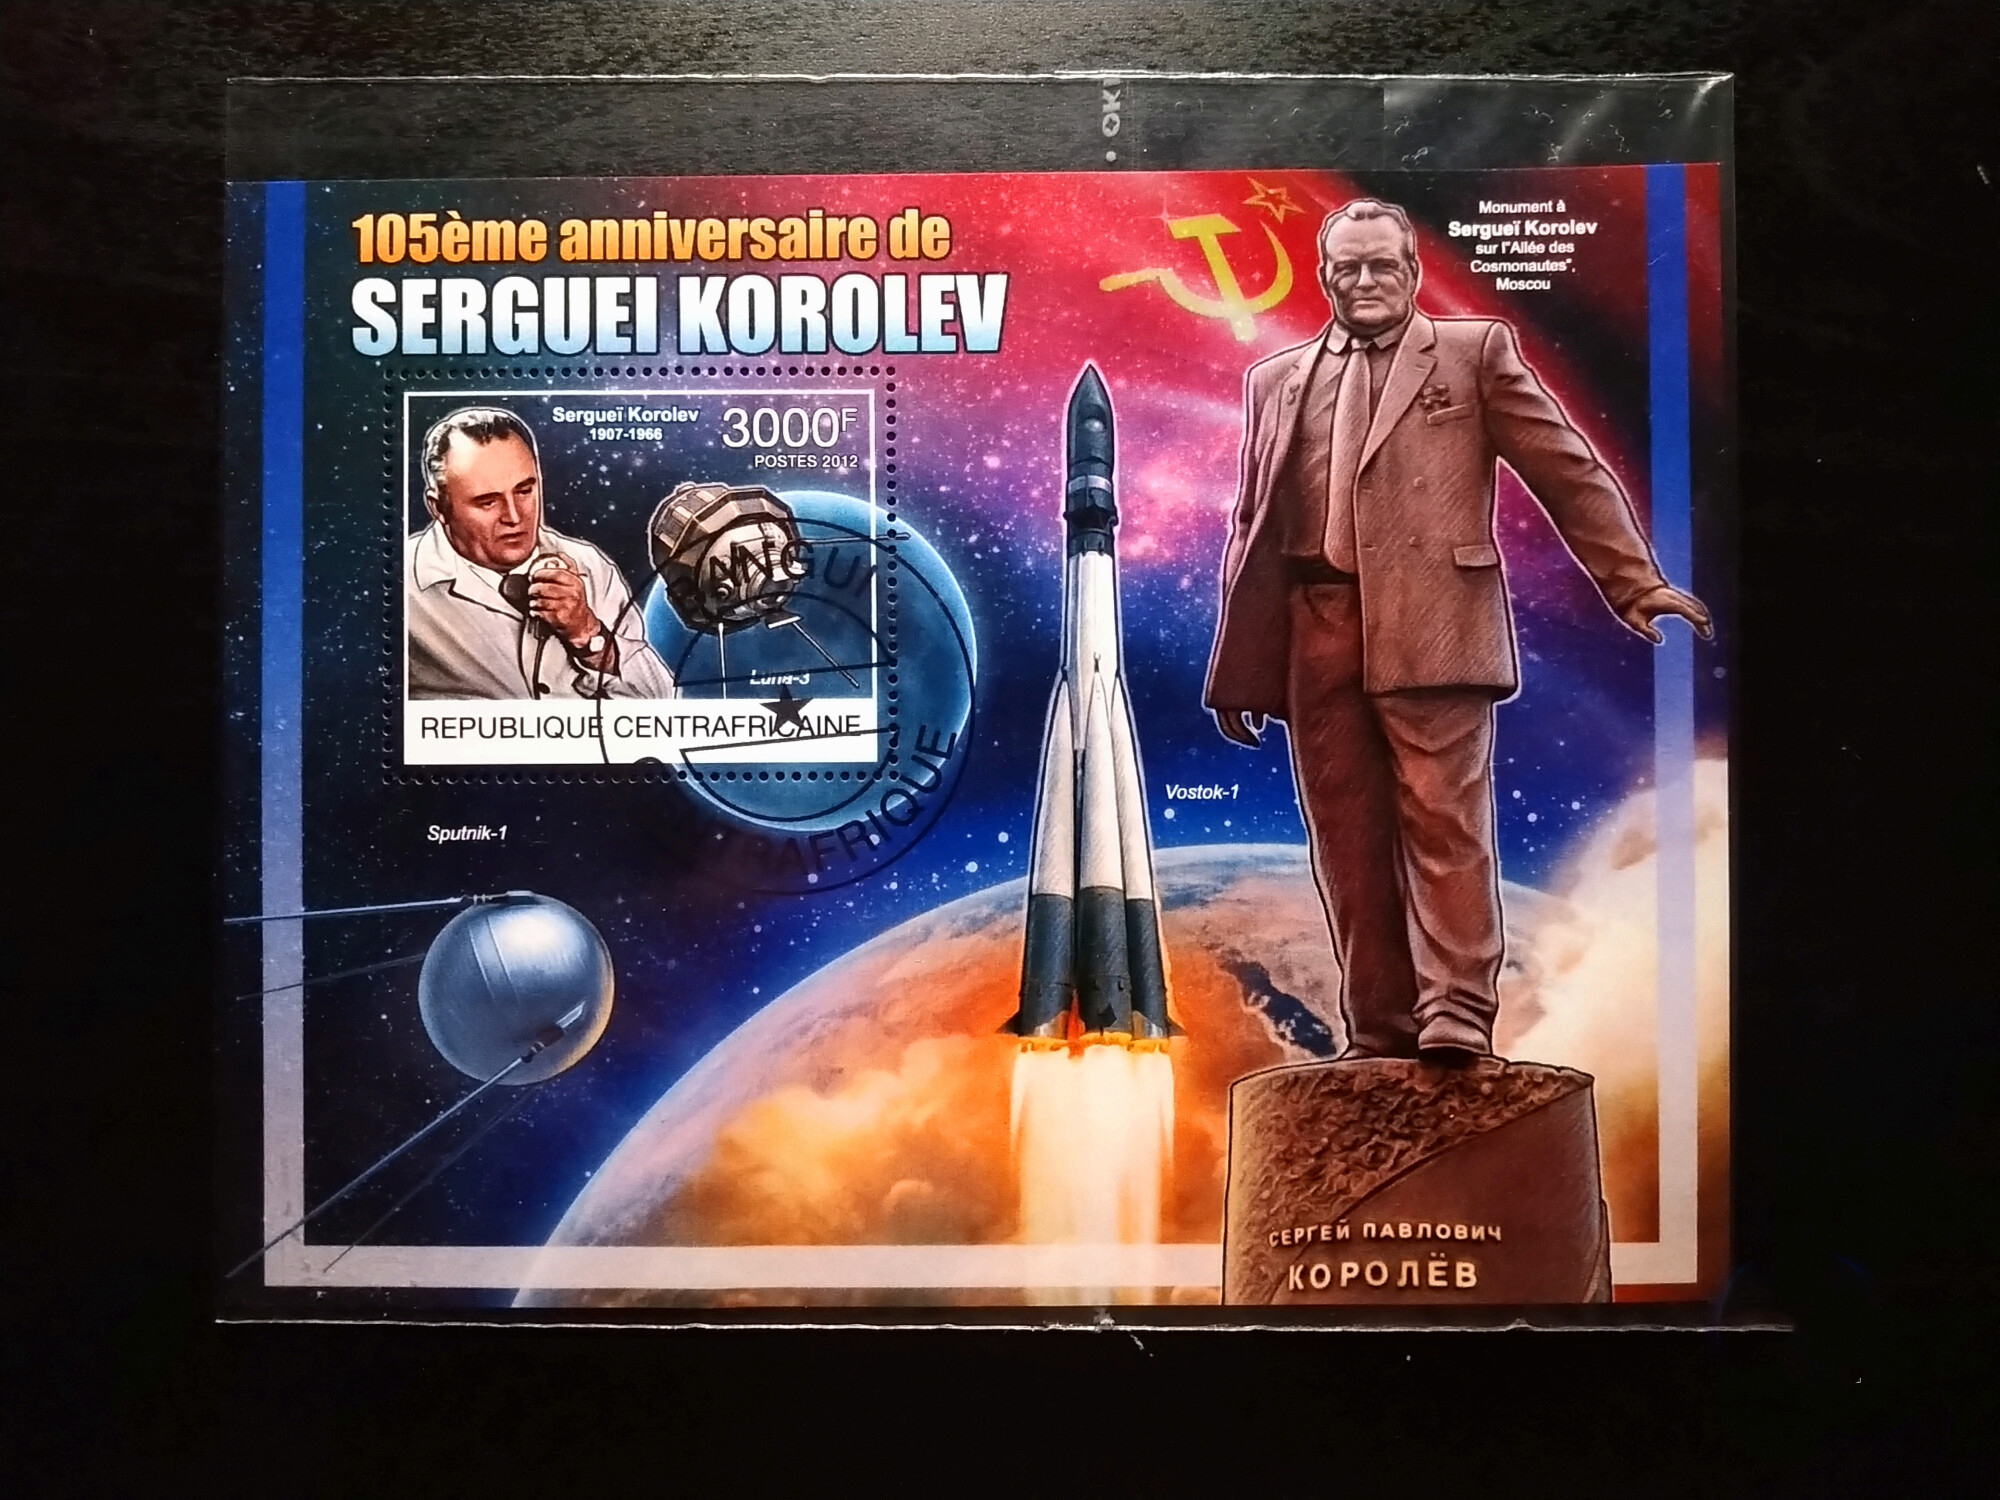   105eme Anniversaire De Seguei Korolev (2012) (3000F)